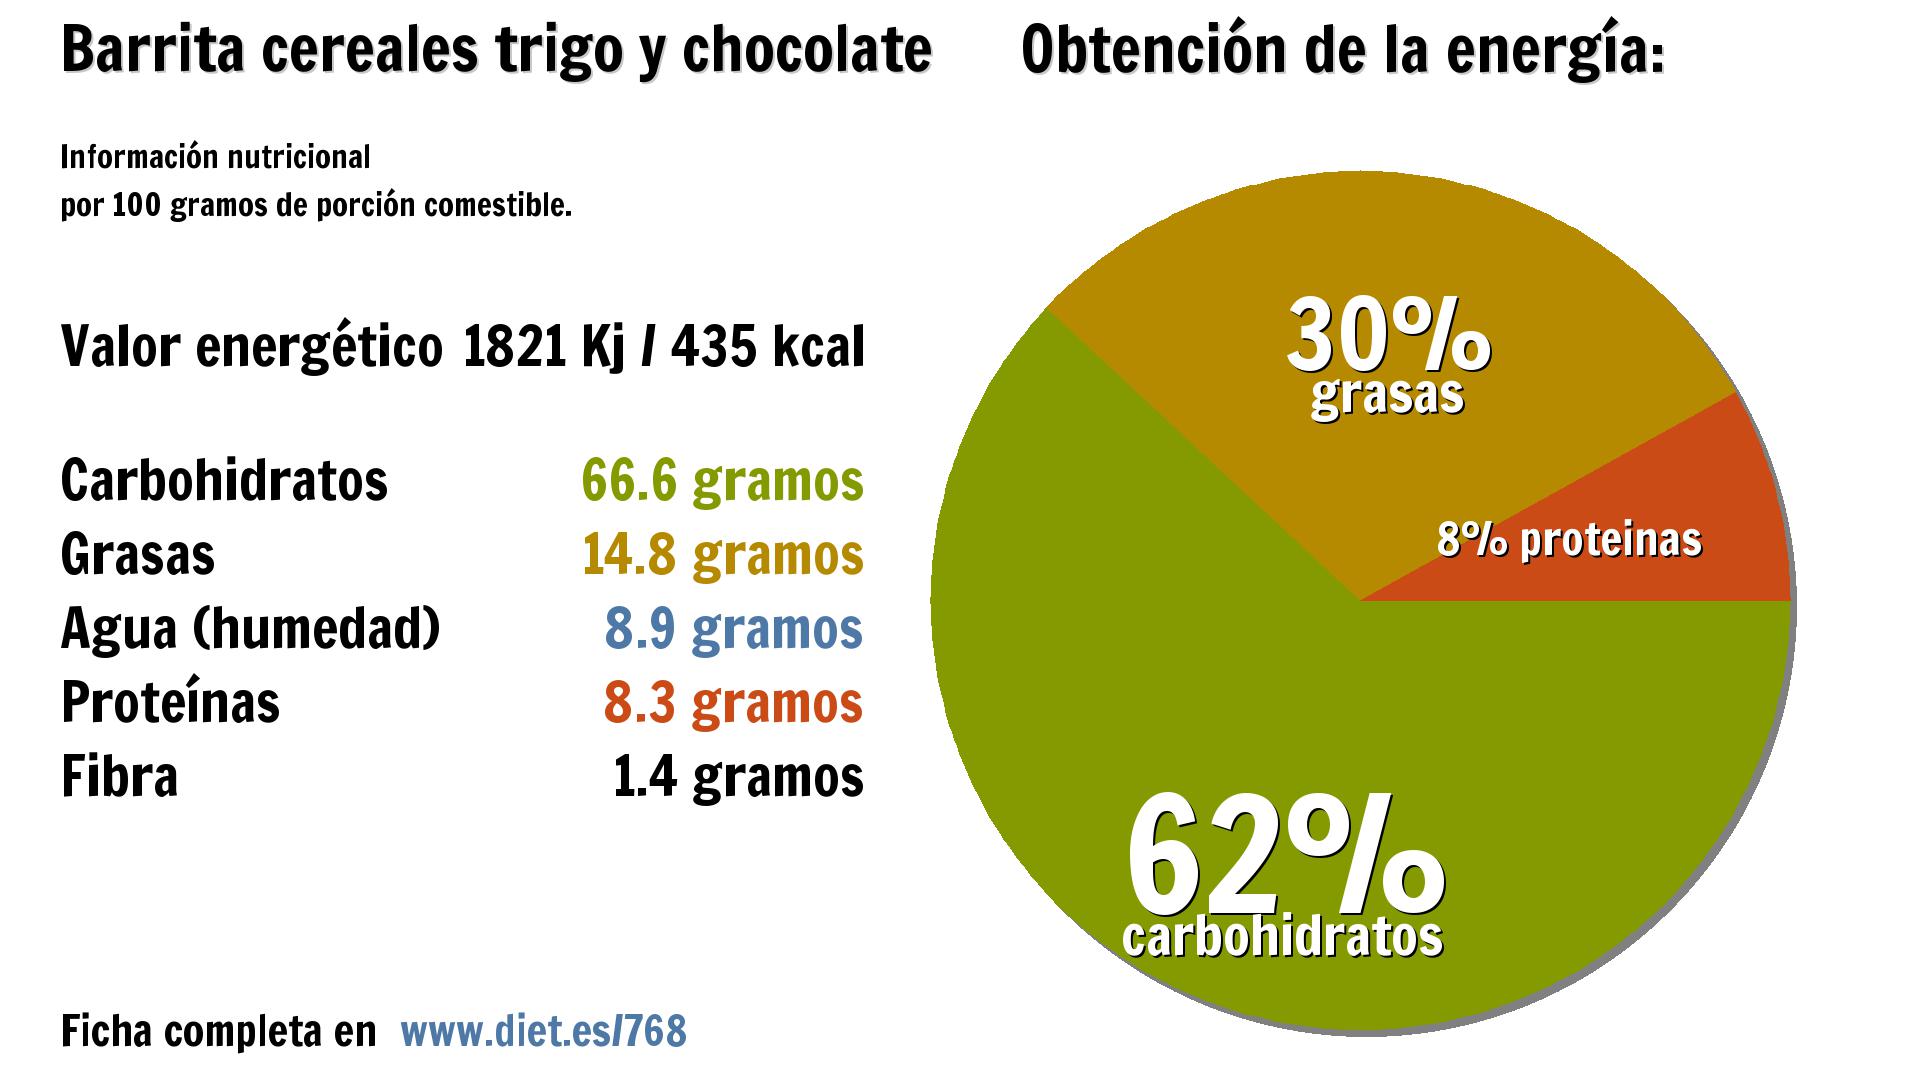 Barrita cereales trigo y chocolate: energía 1821 Kj, carbohidratos 67 g., grasas 15 g., agua 9 g., proteínas 8 g. y fibra 1 g.